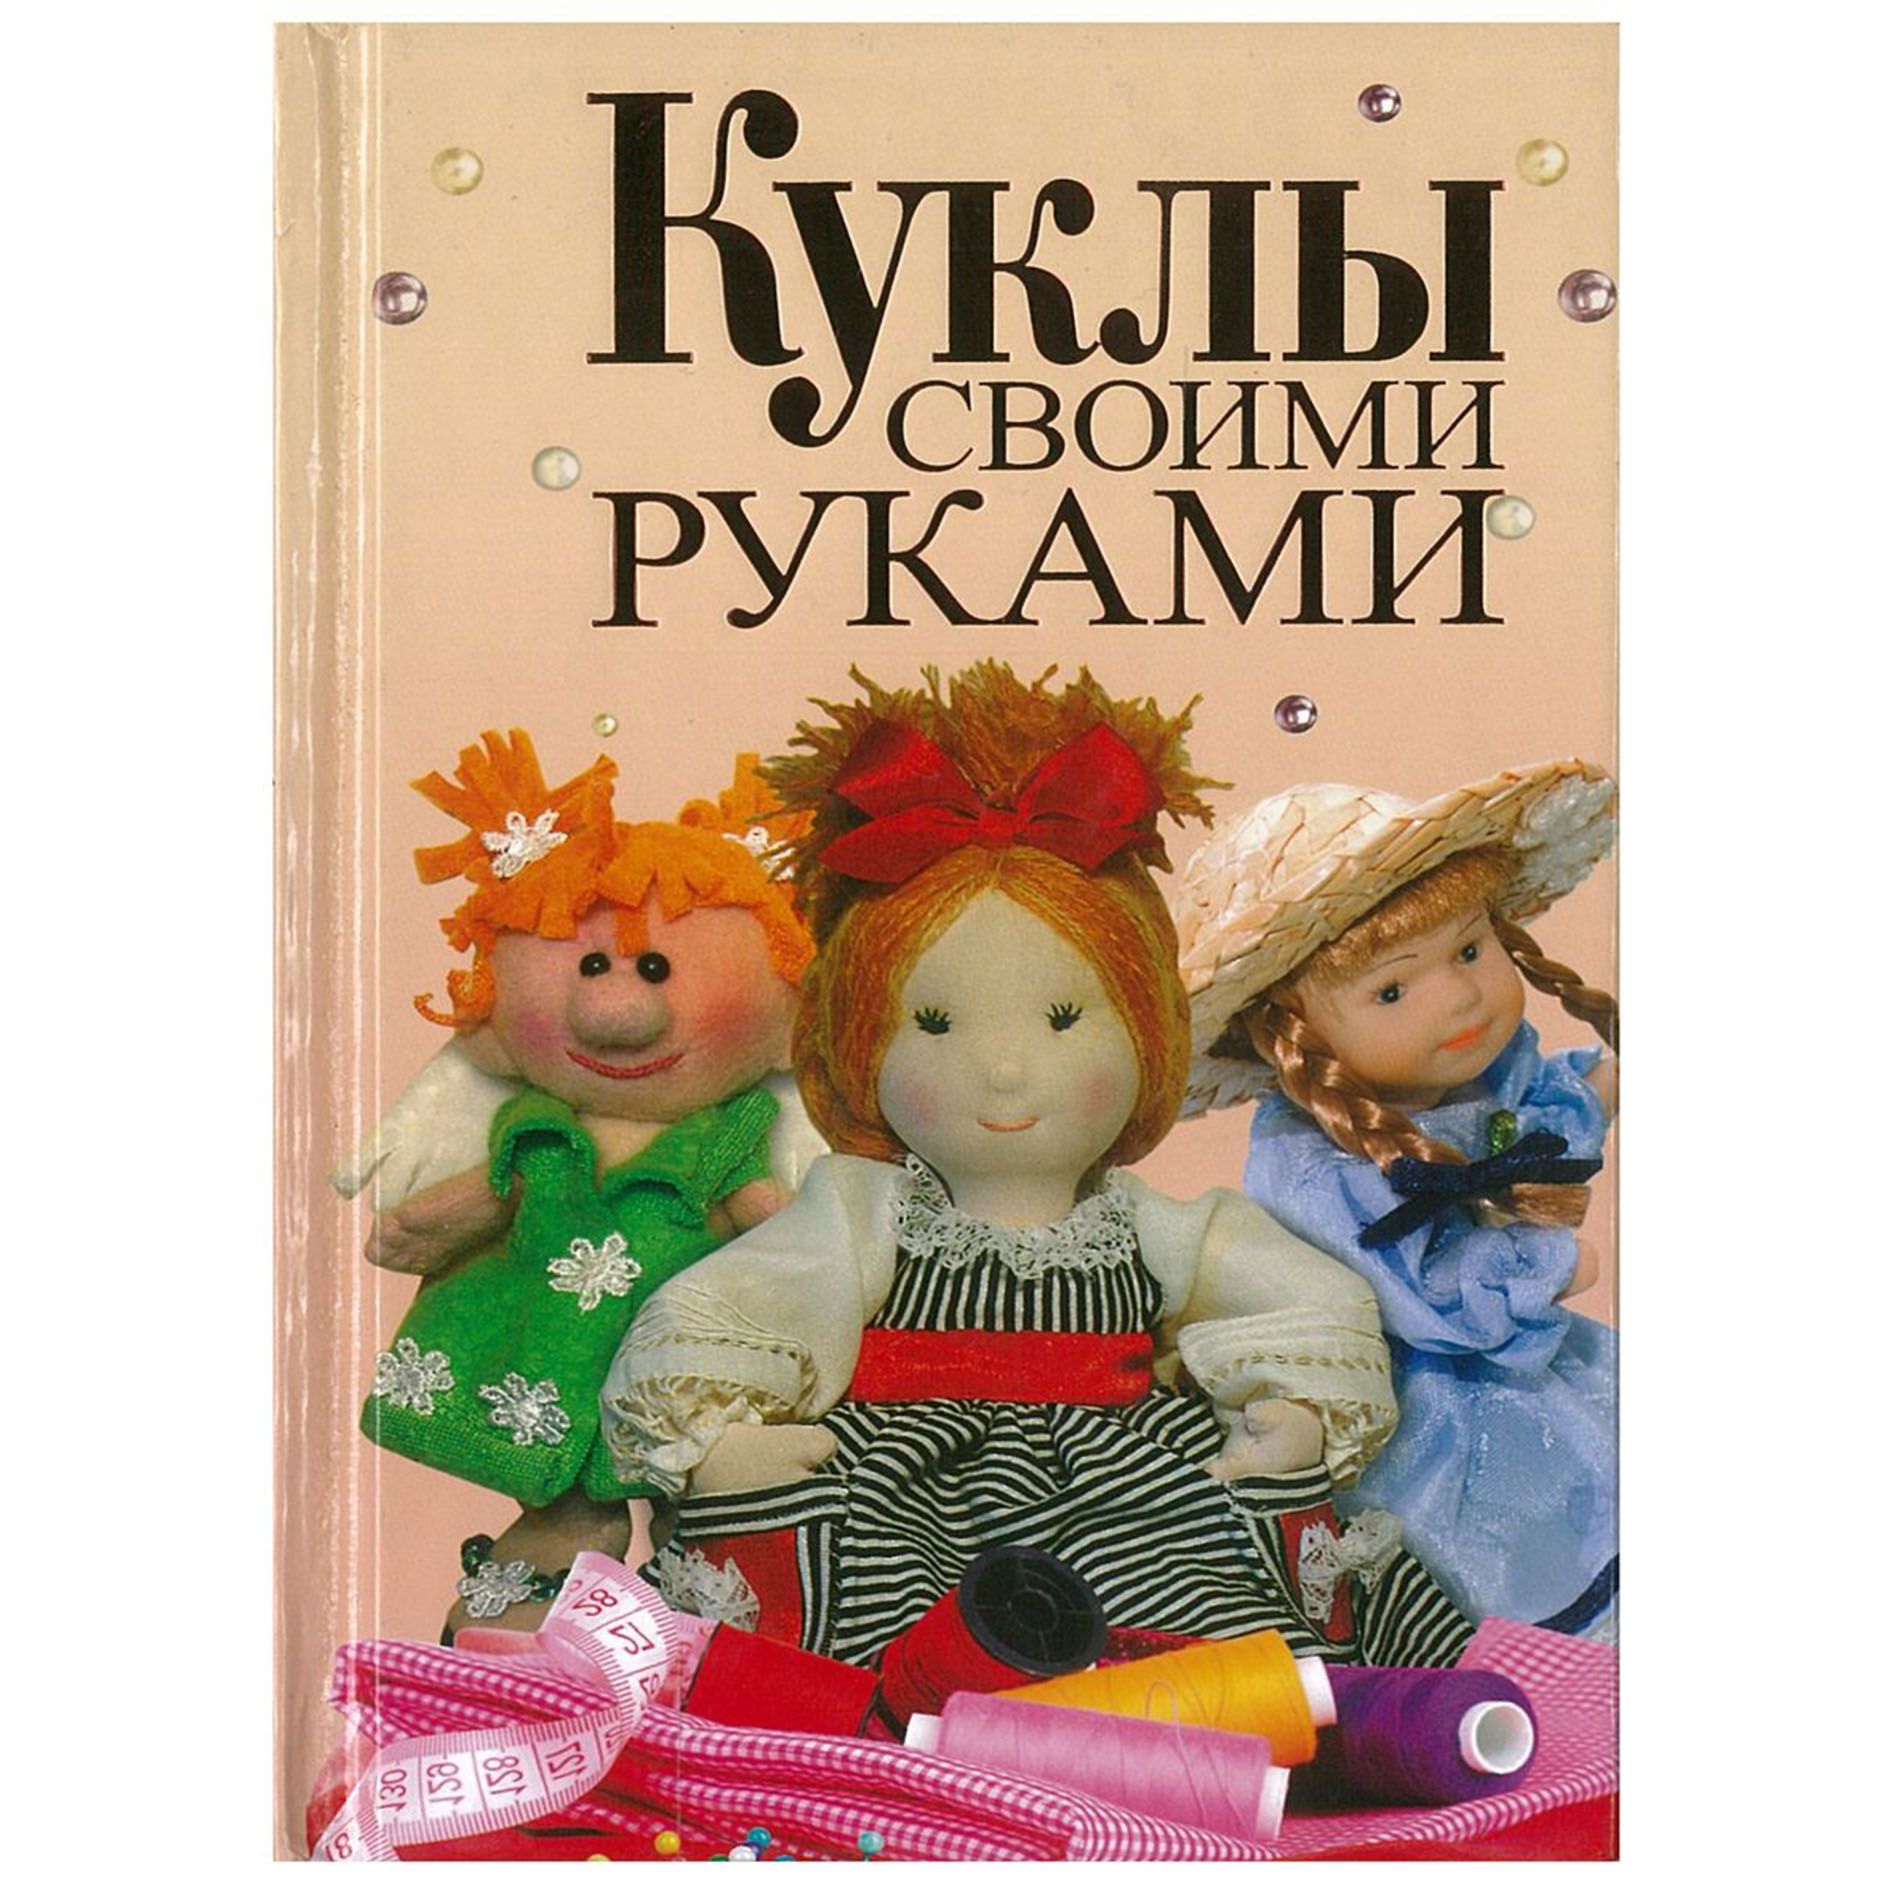 Сказочные куклы своими руками, Анна Зайцева – скачать pdf на ЛитРес